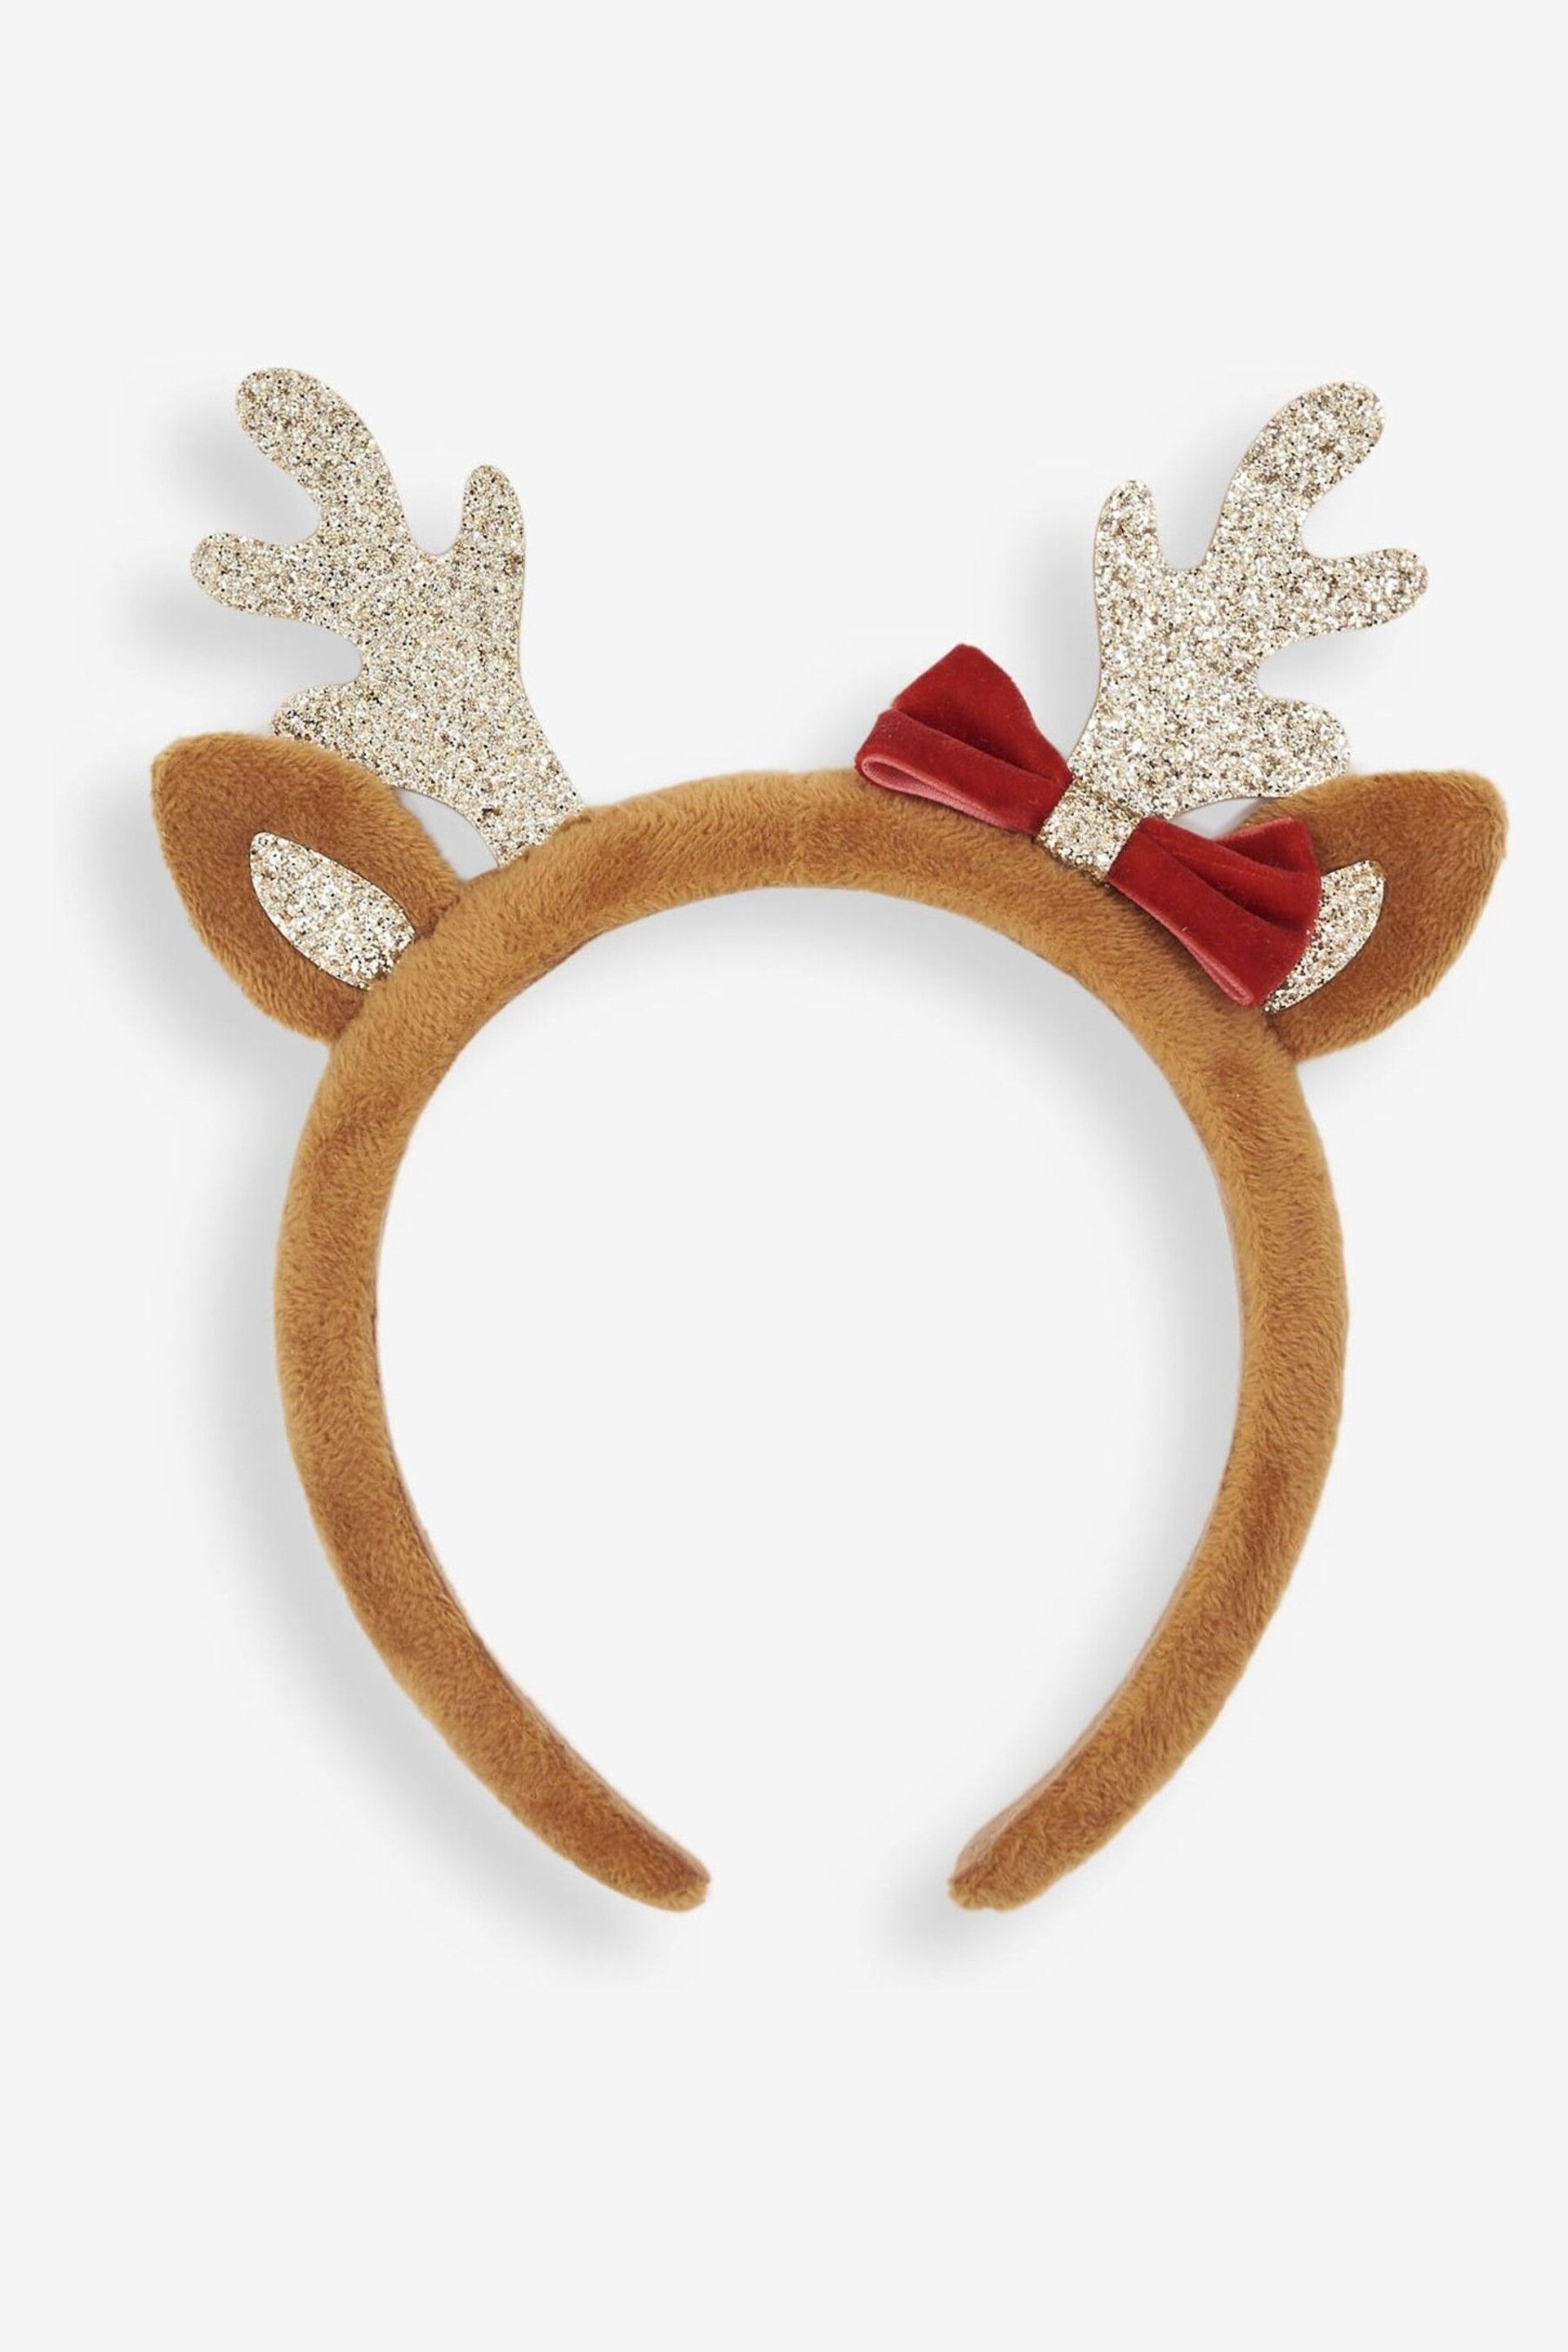 JoJo Maman Bébé Brown Reindeer Headband - Image 1 of 5